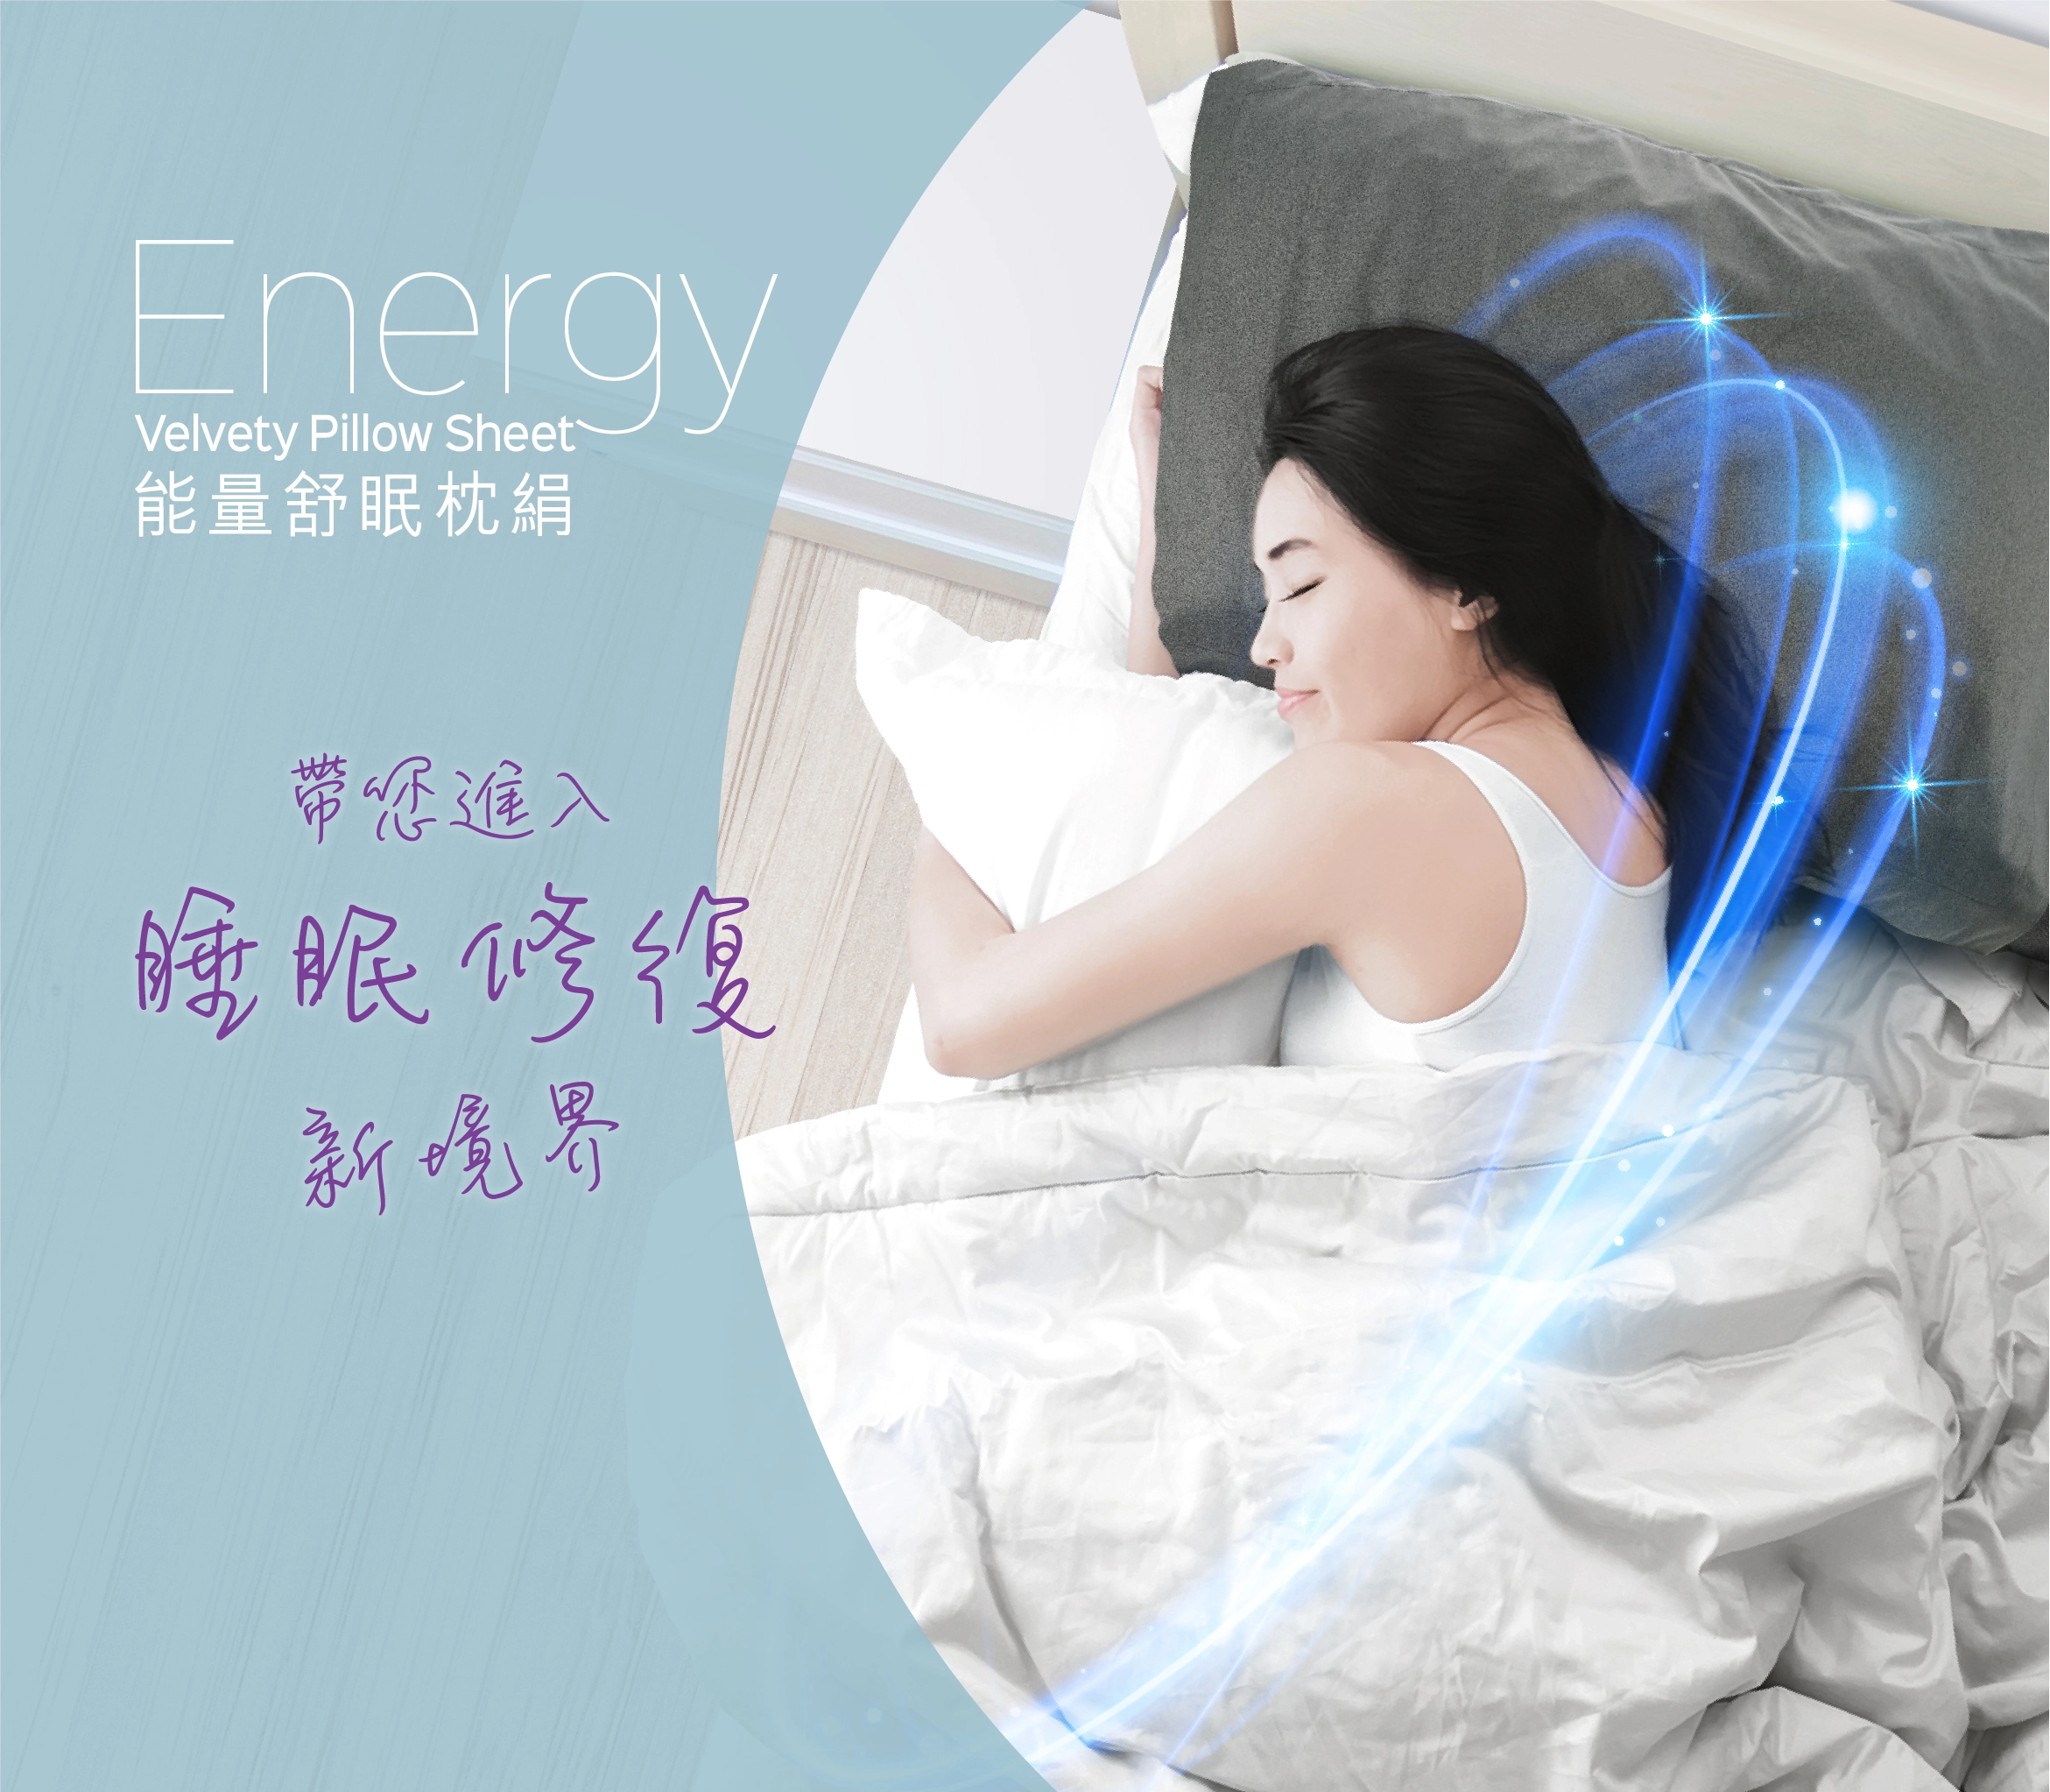 Energy Velvety Pillow Sheet Home Hero Mobile@2x 100 1 copy